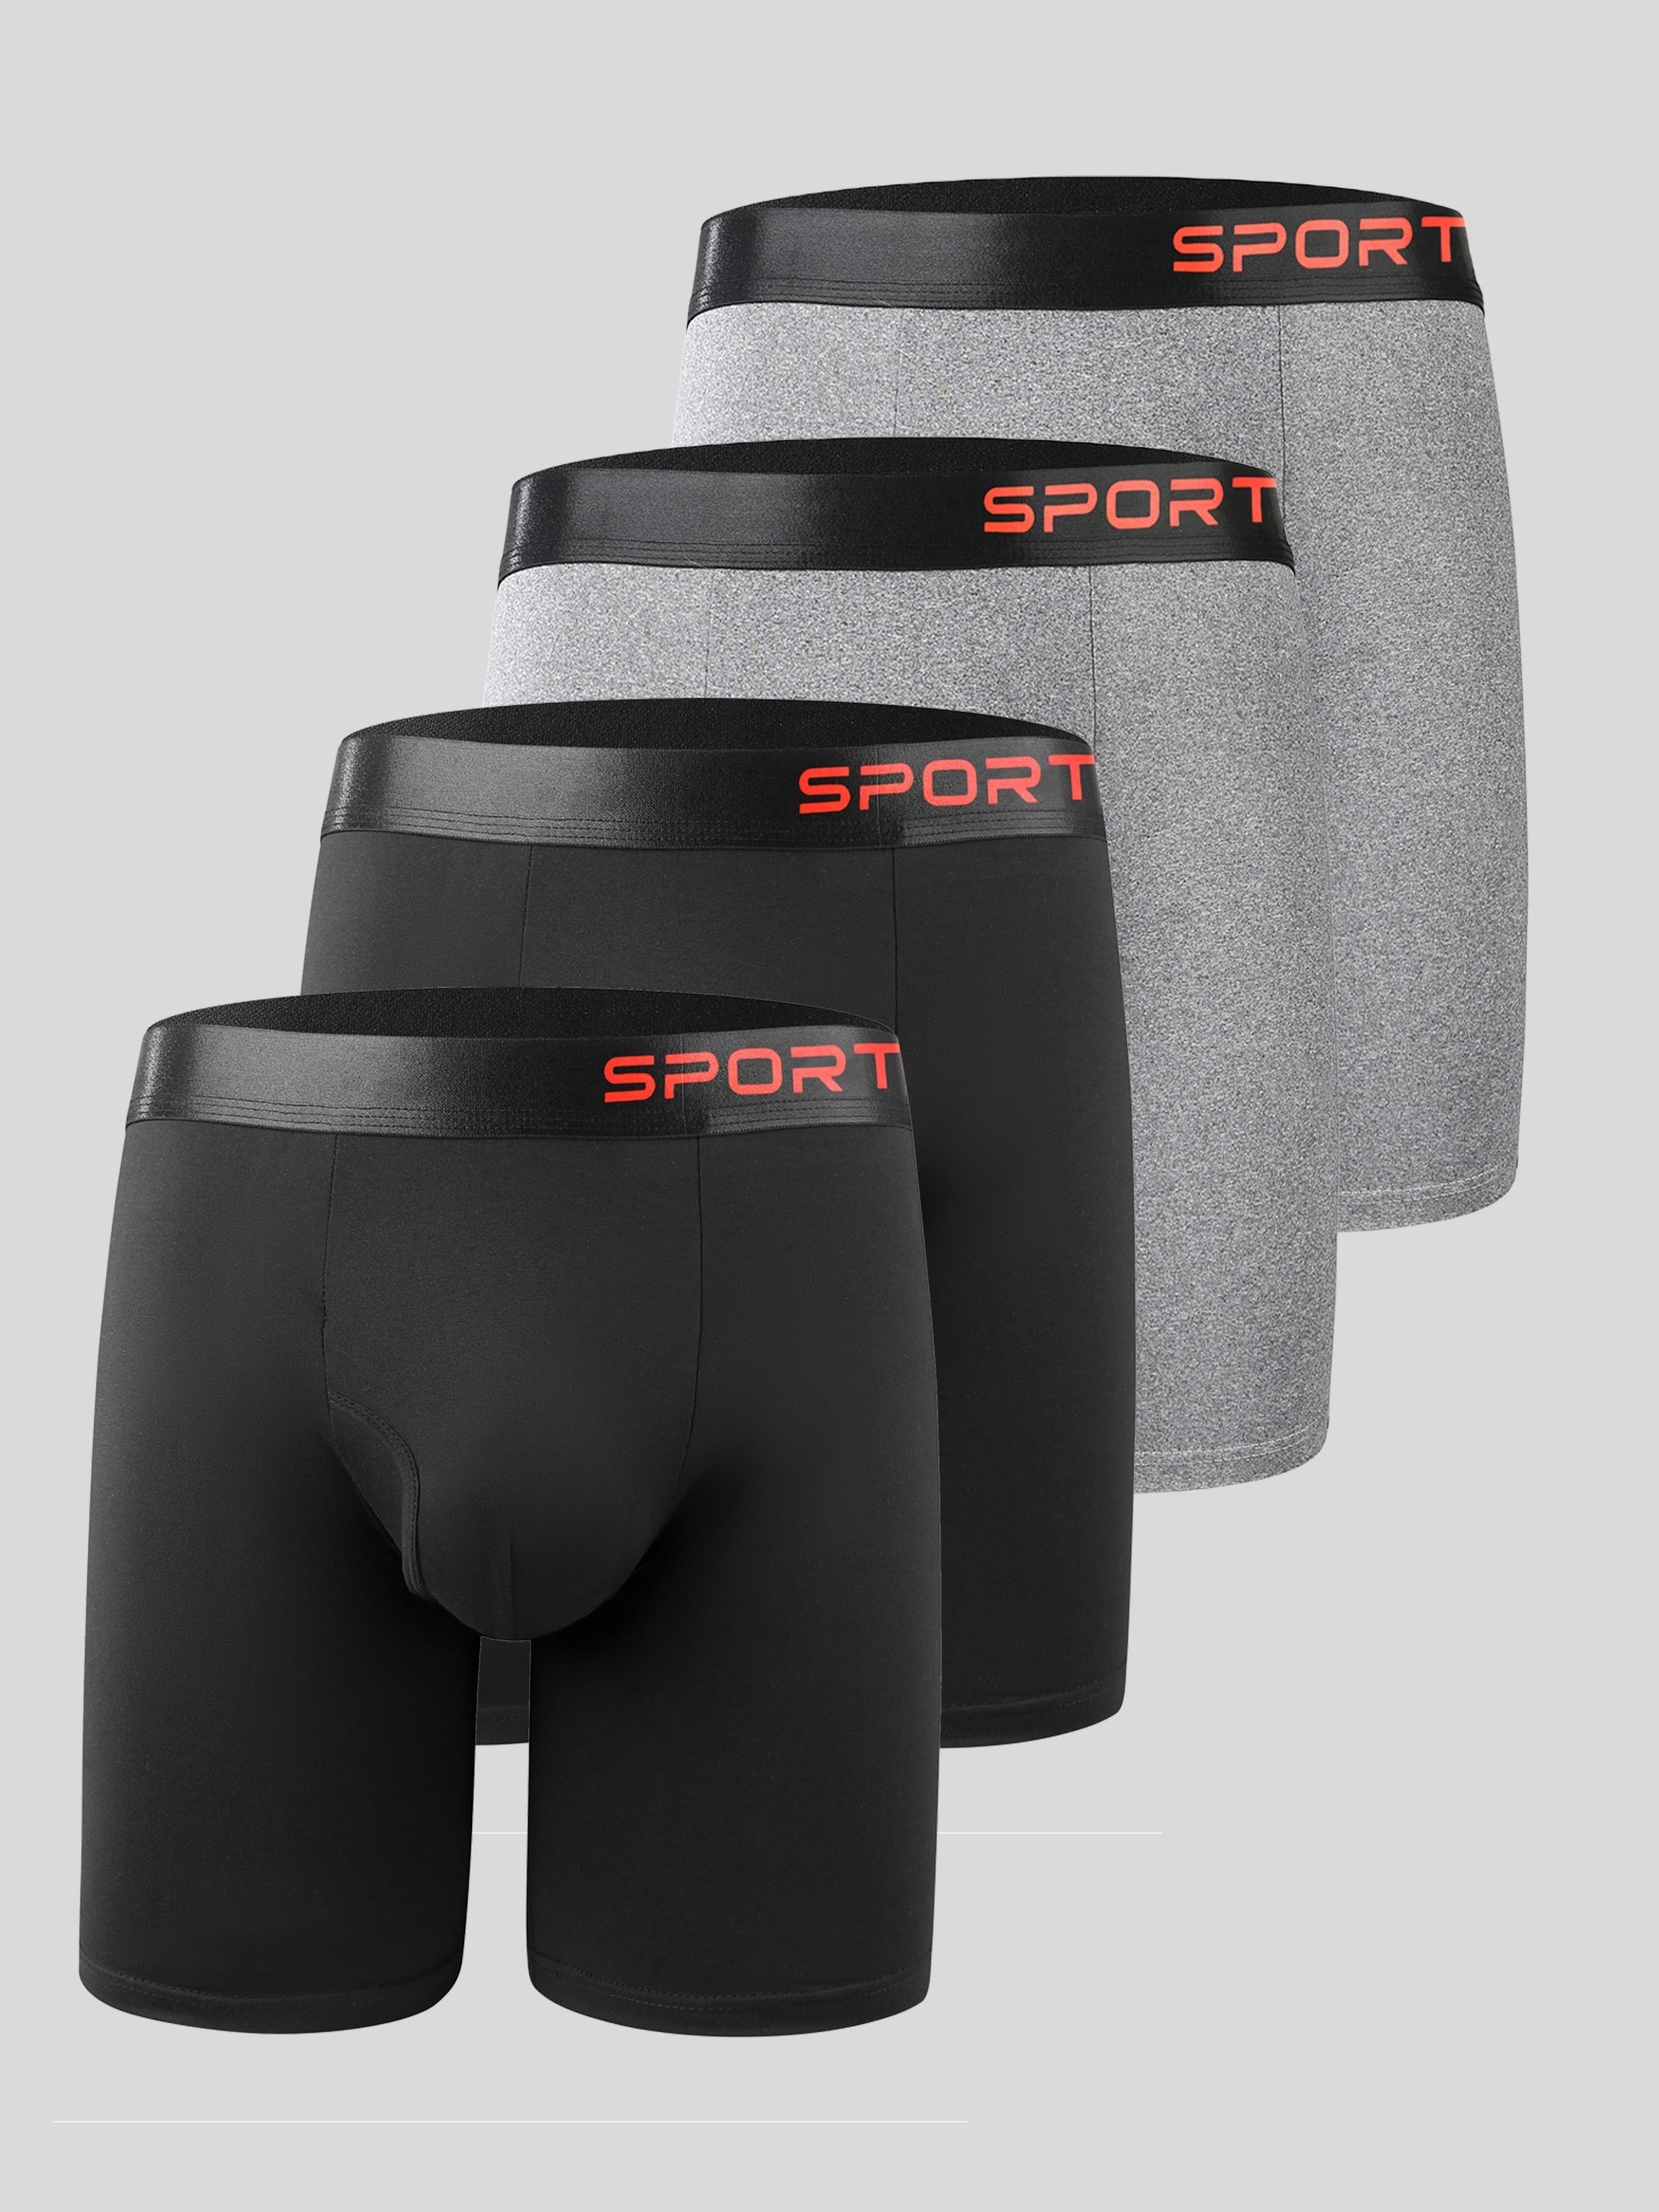 Spandex Underwear for Men